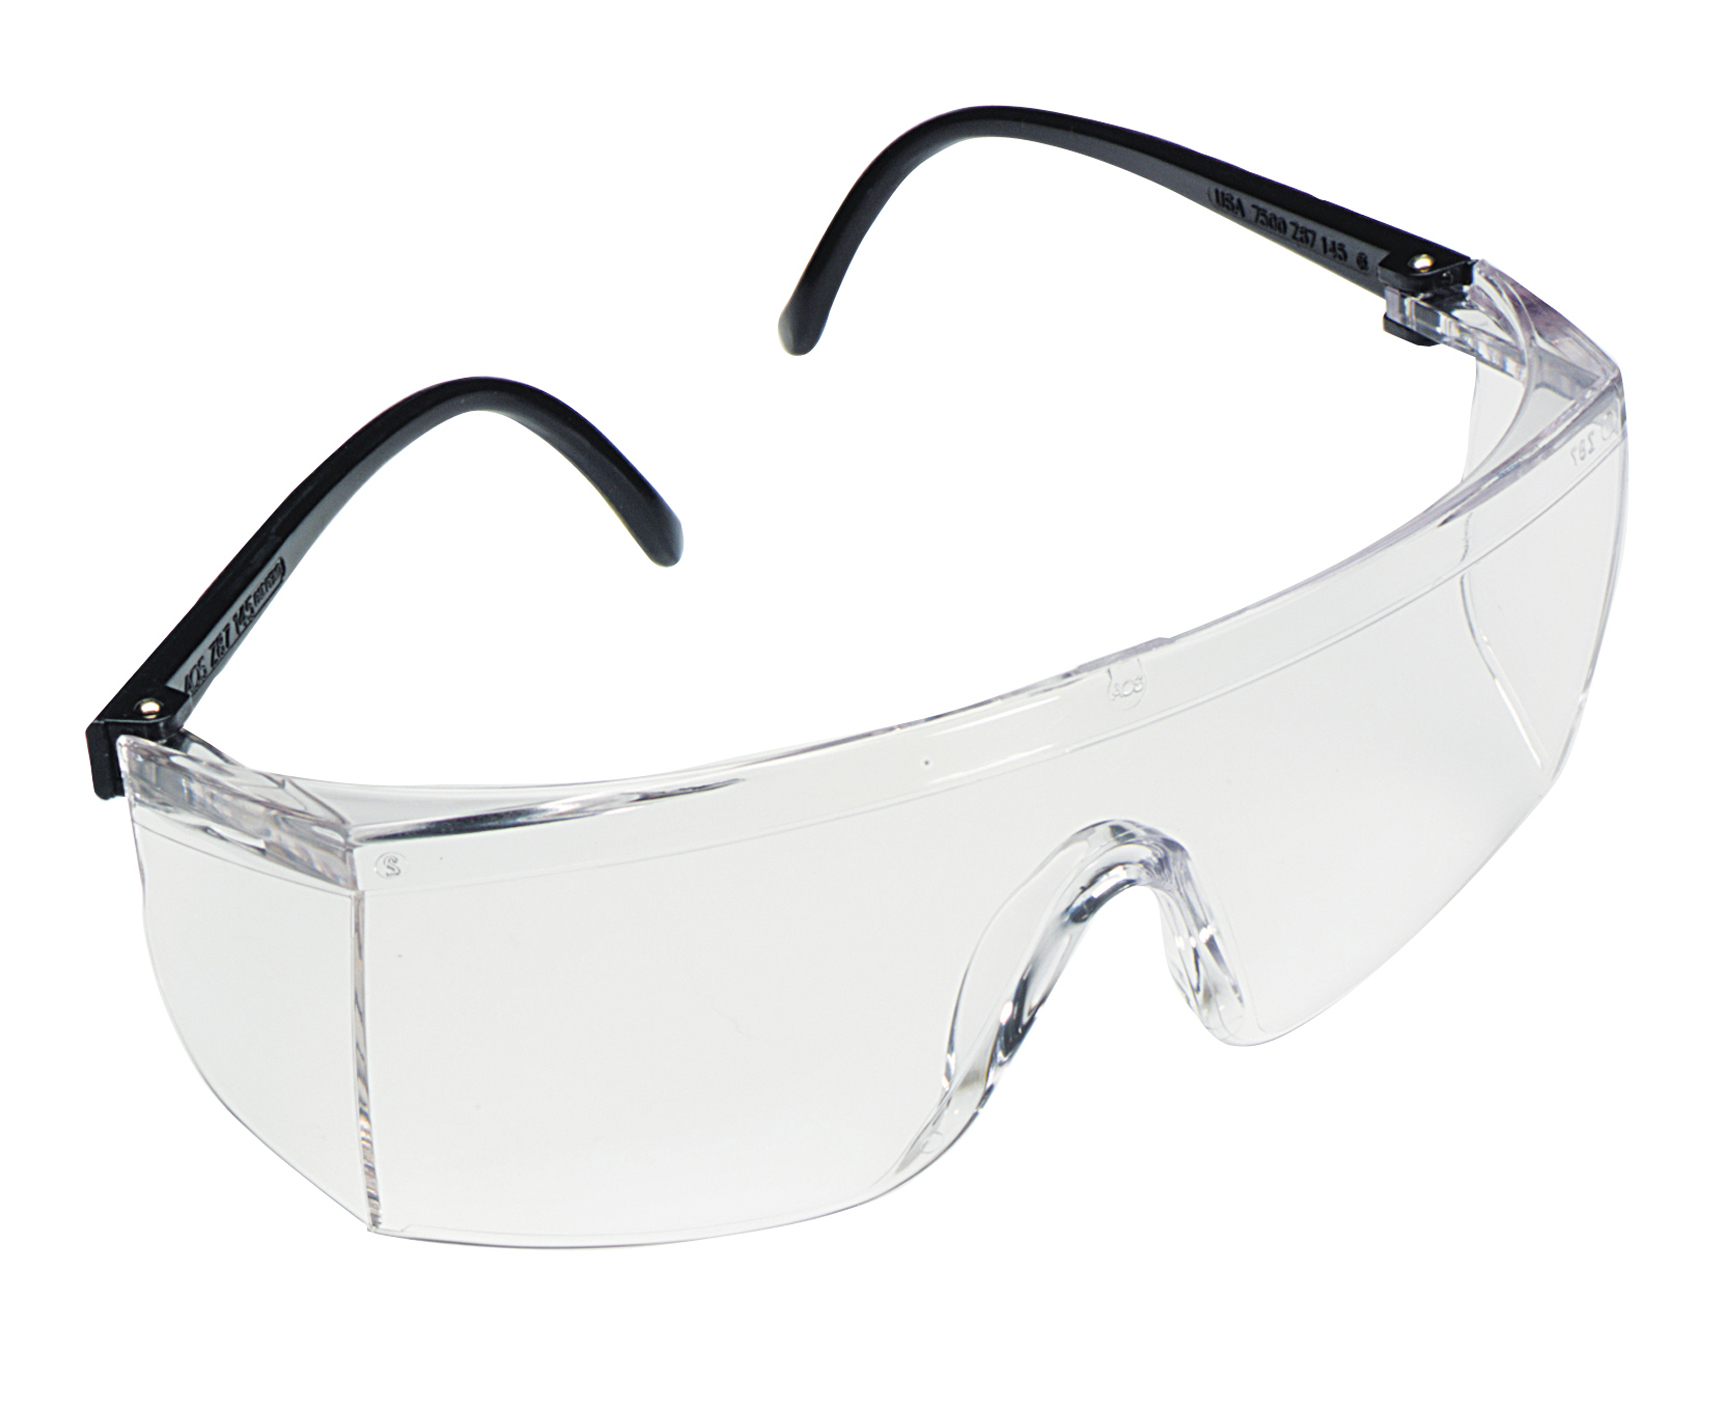 3M 防雾防刮擦经济型防护眼镜(15902)